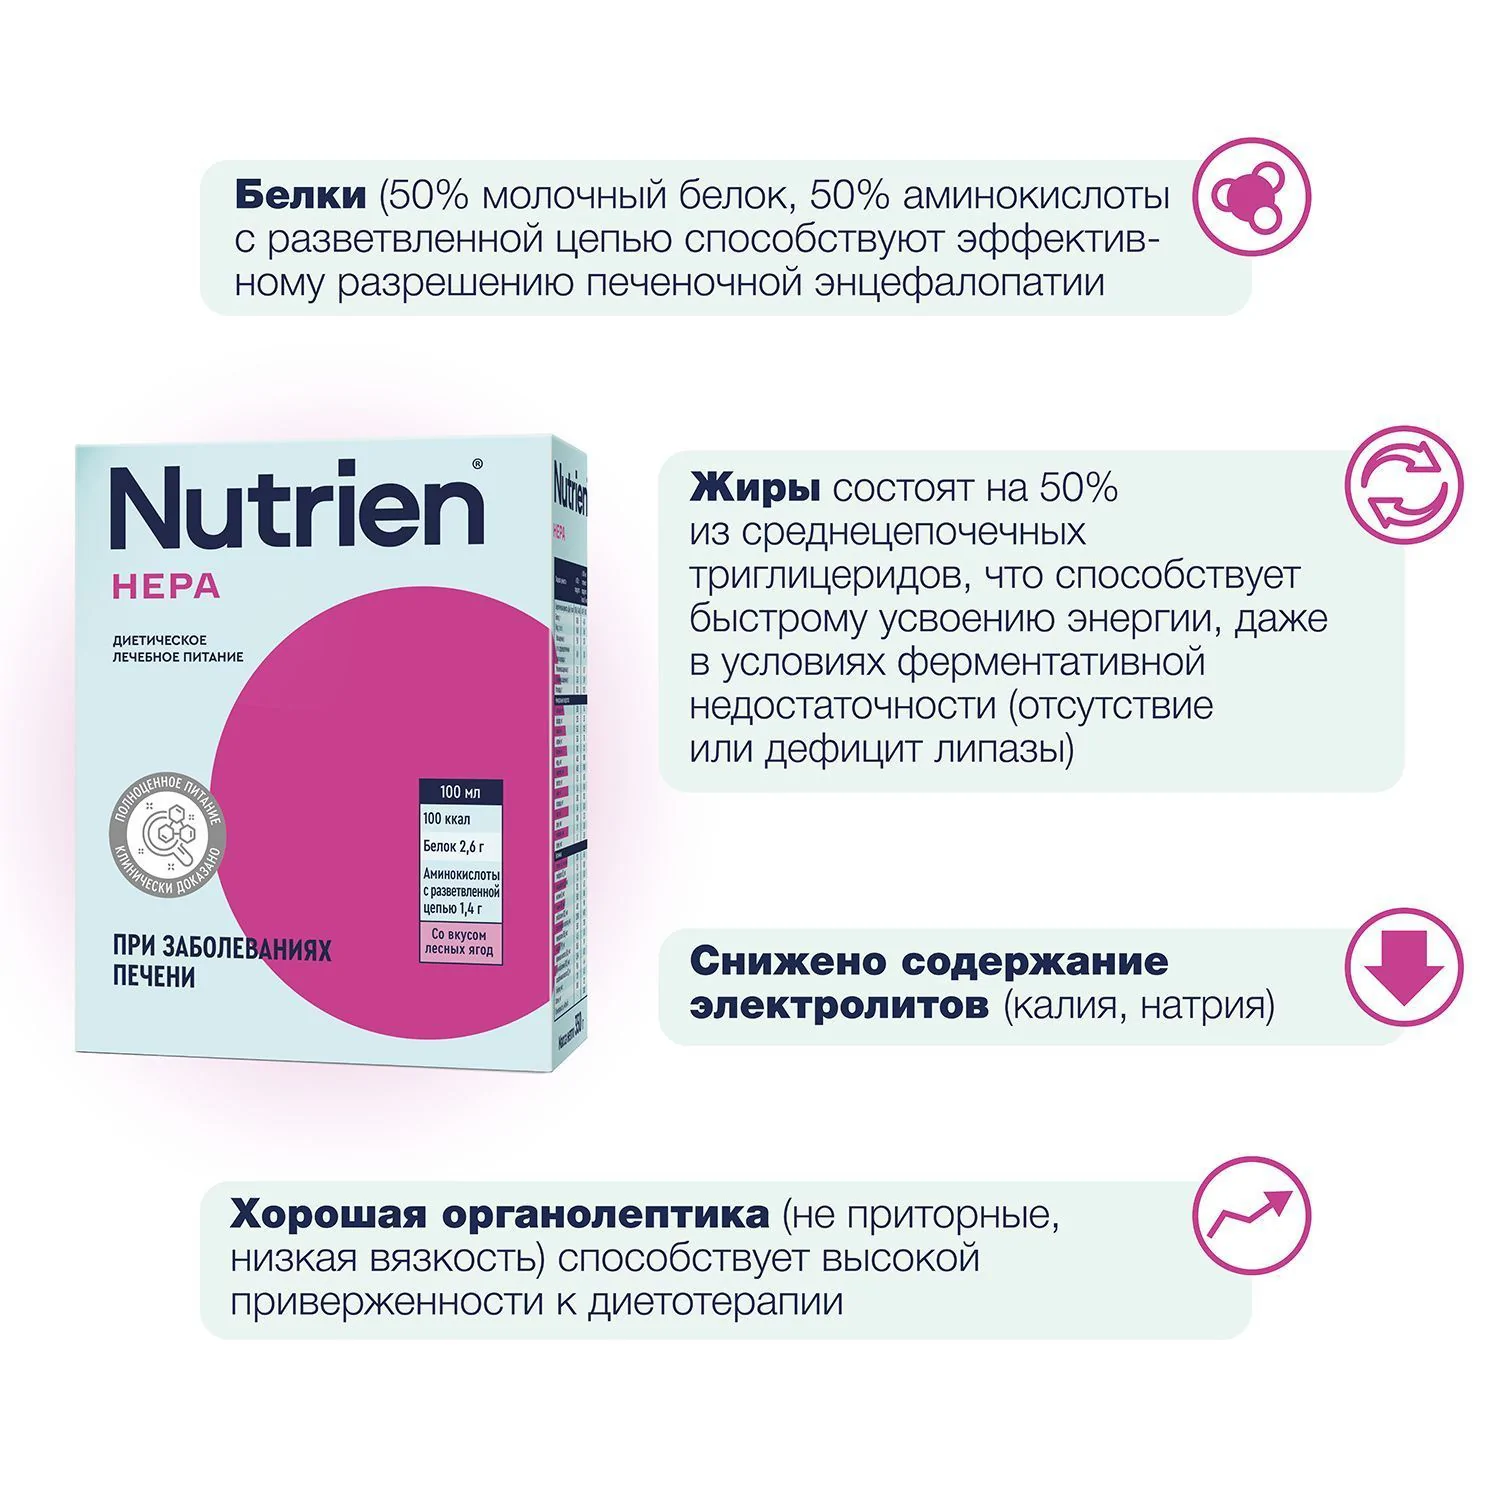 Nutrien Hepa - 8